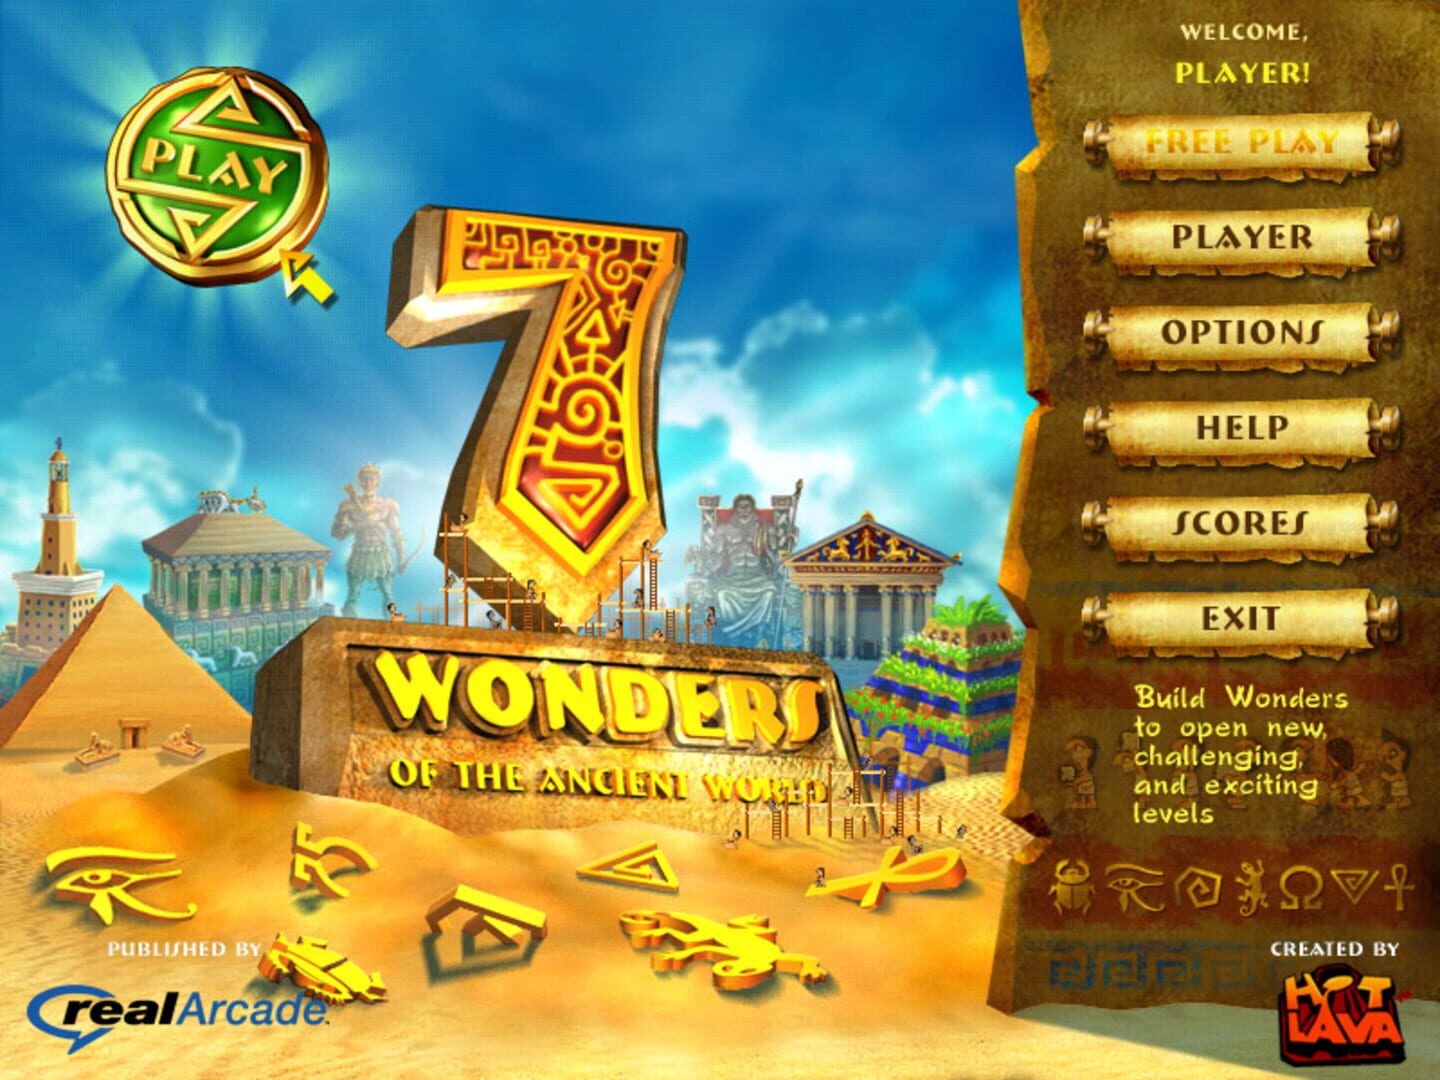 Этап компьютерной игры 7 букв. 7 Wonders игра. 7 Чудес света игра. Компьютерная игра семь чудес света.